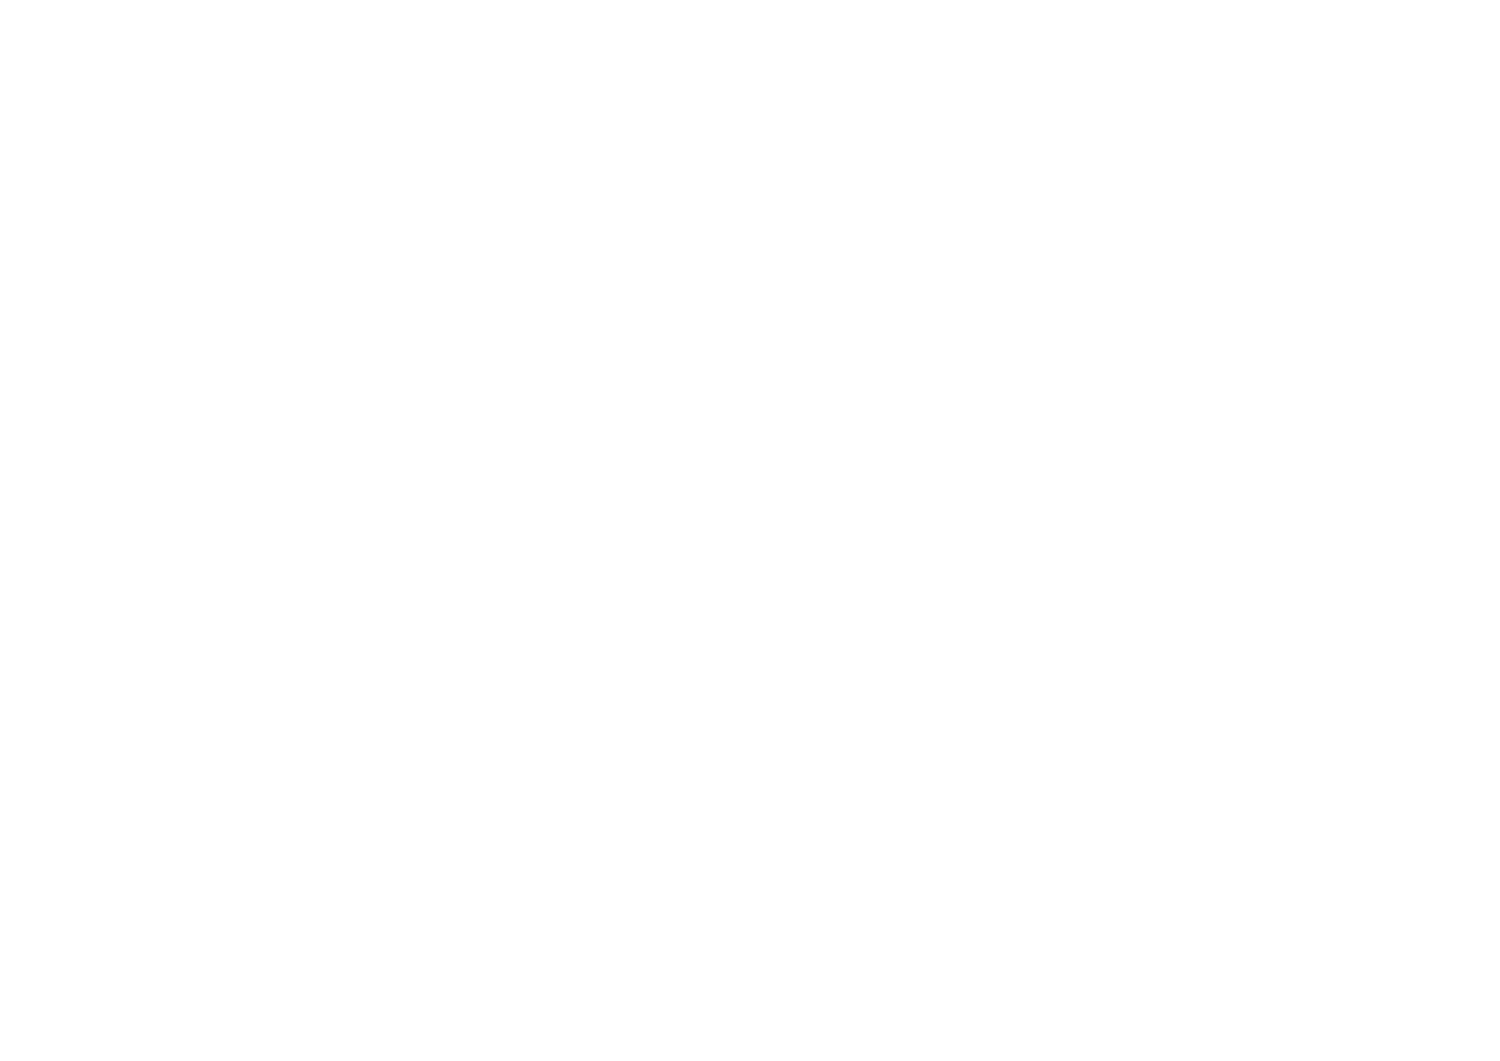 Trio Orelon